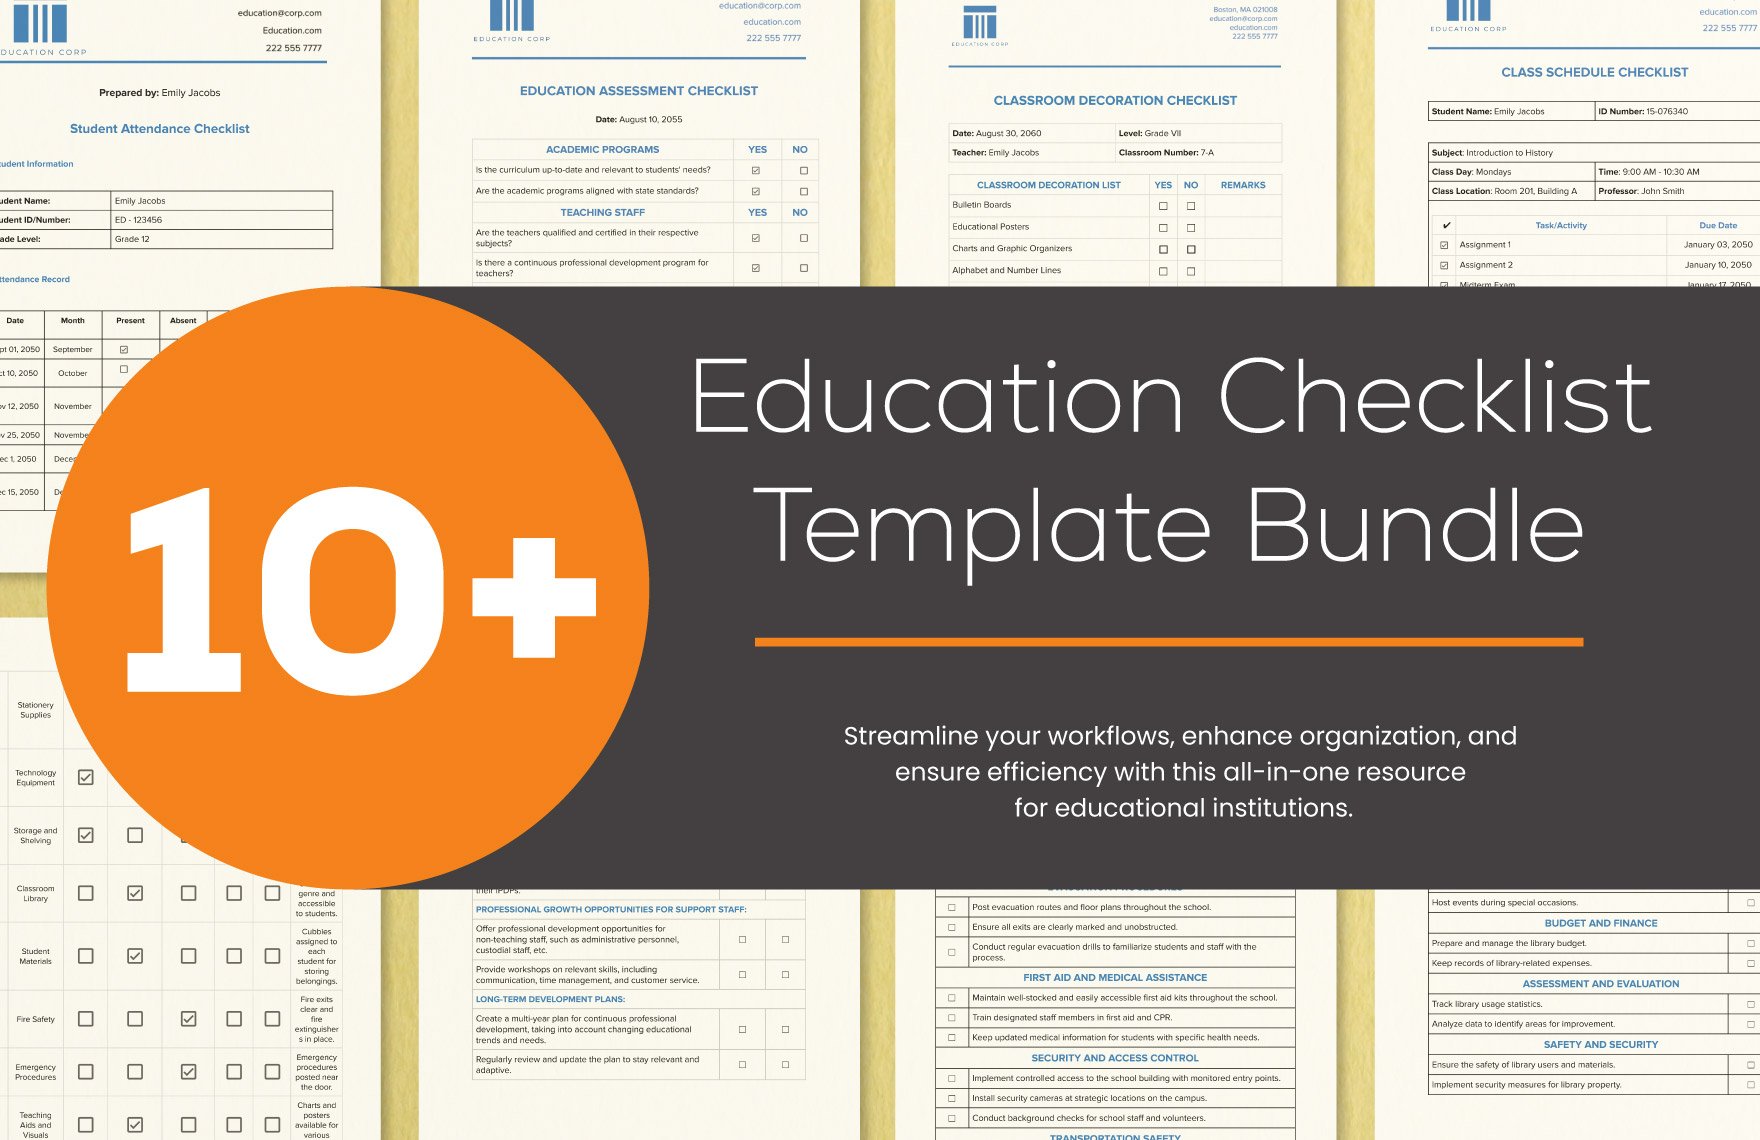 10+ Education Checklist Template Bundle